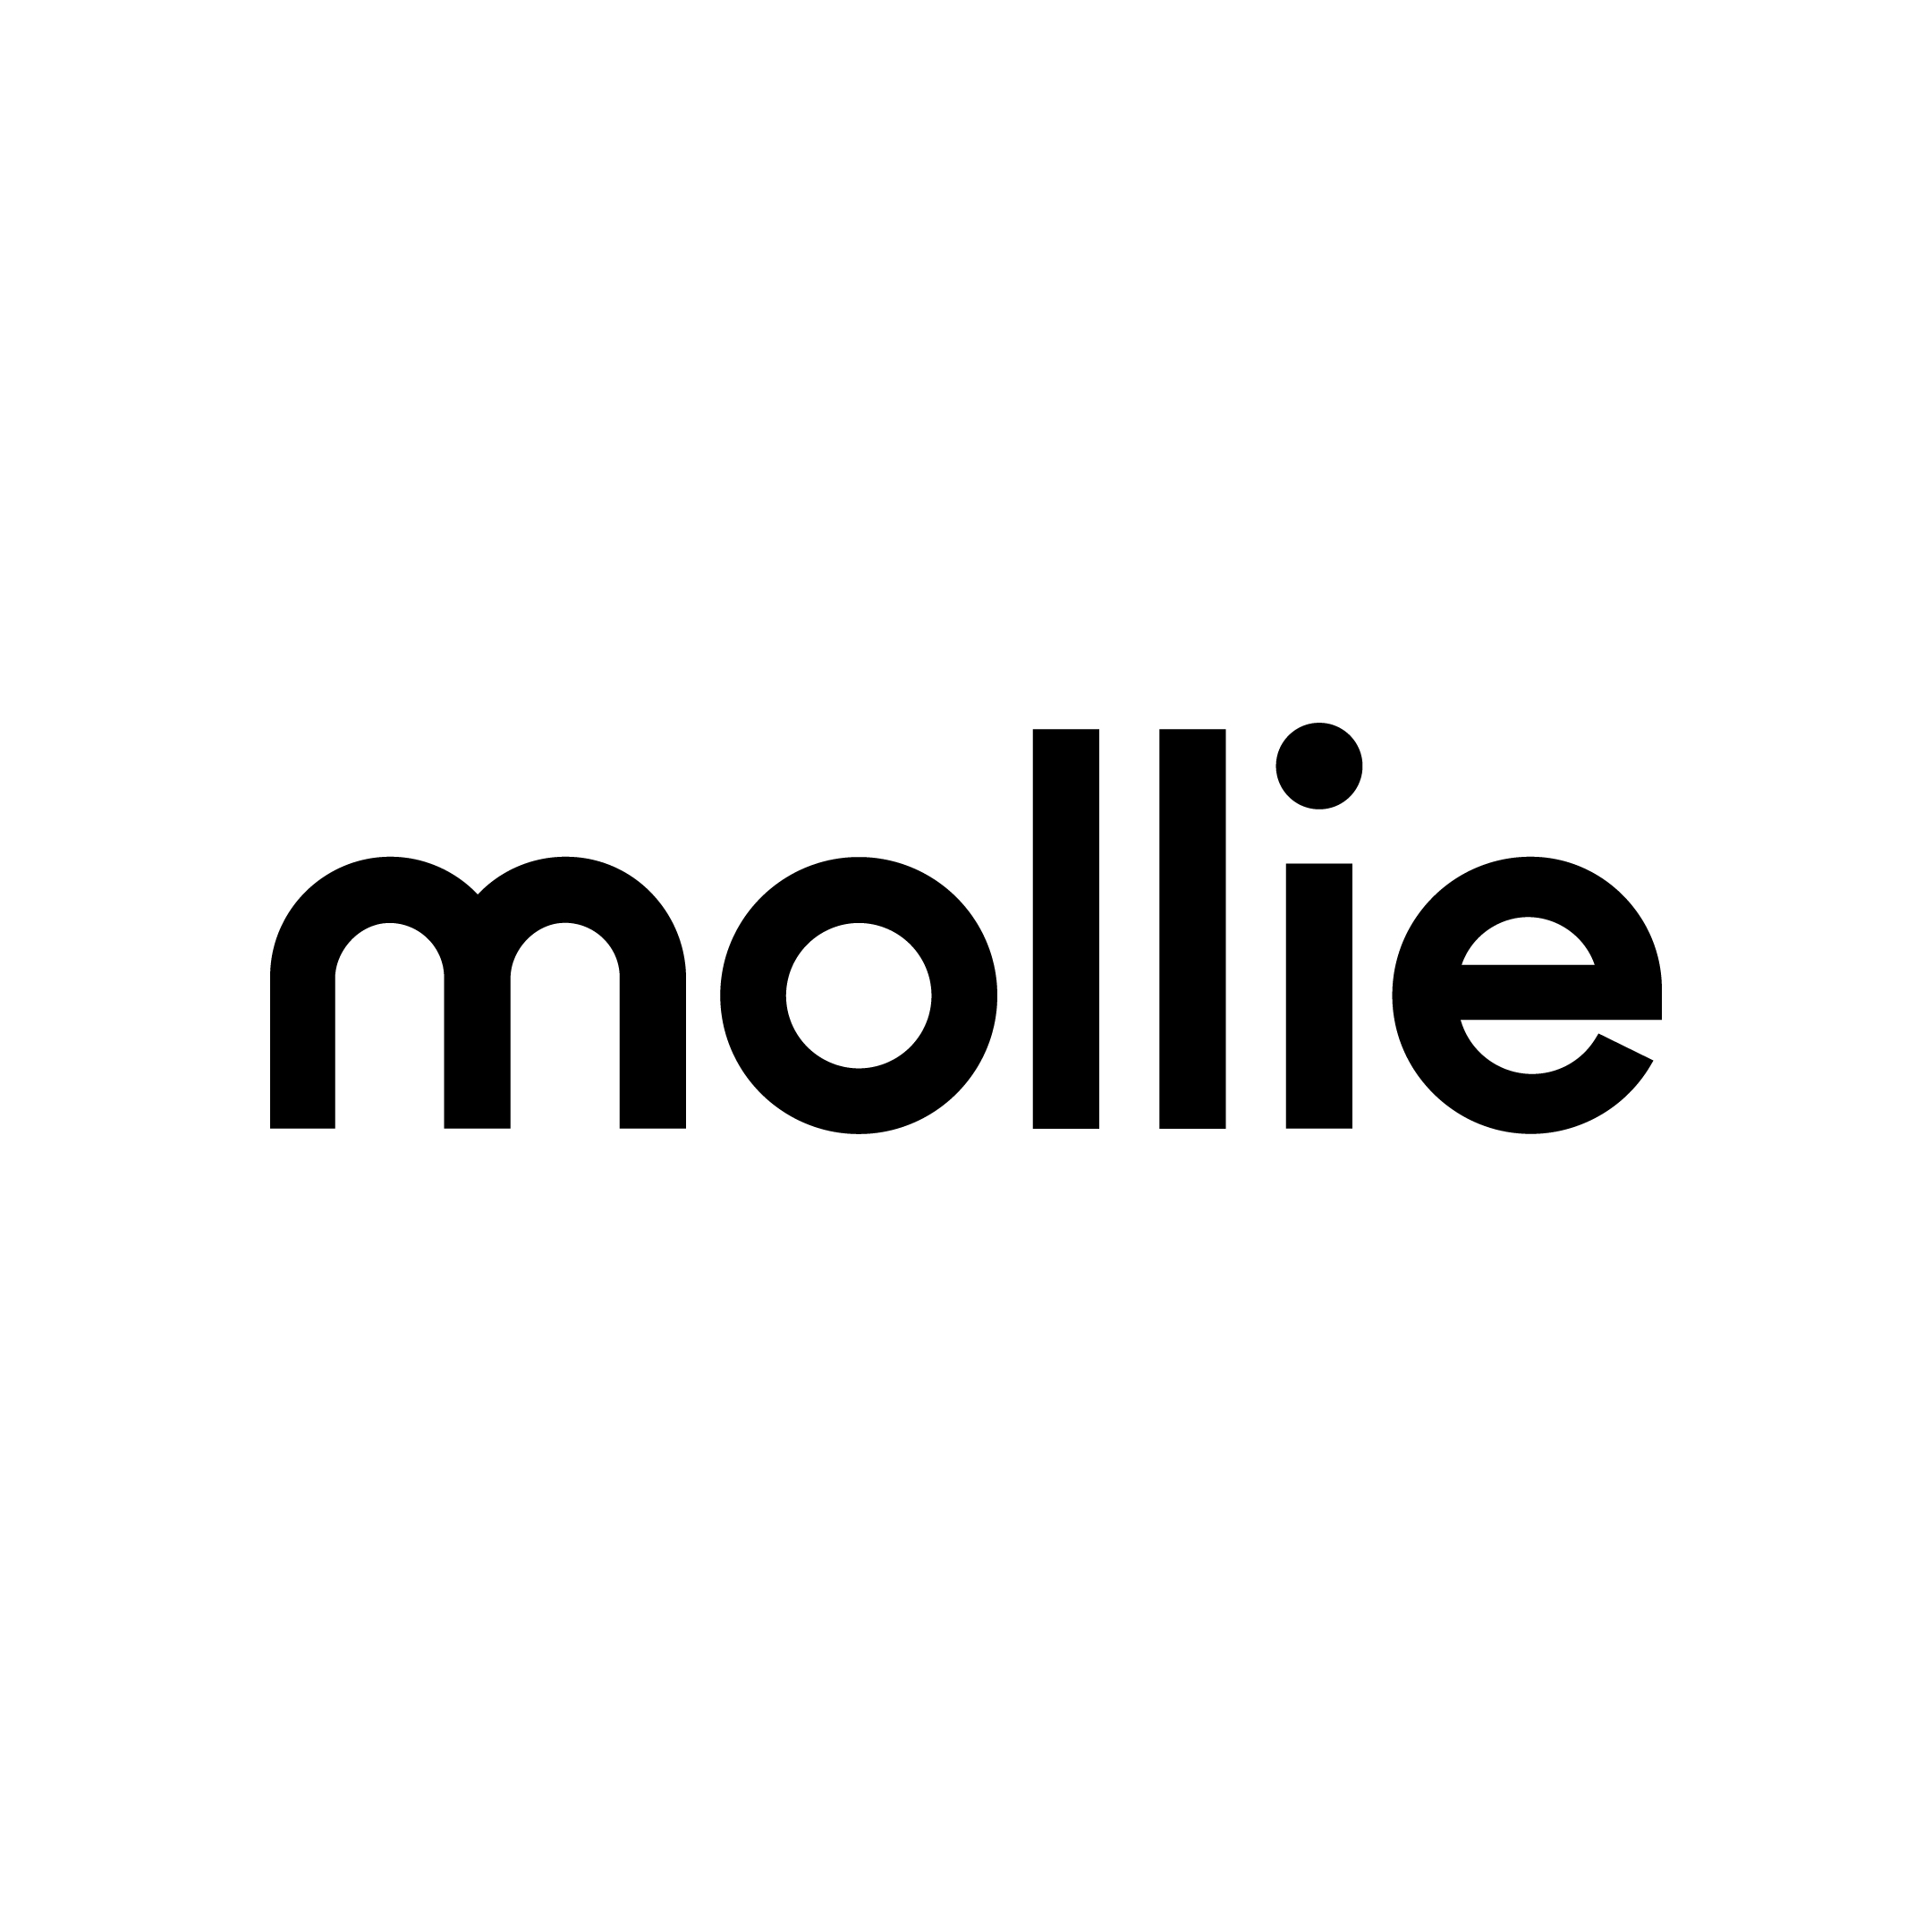 Mollie logo dark